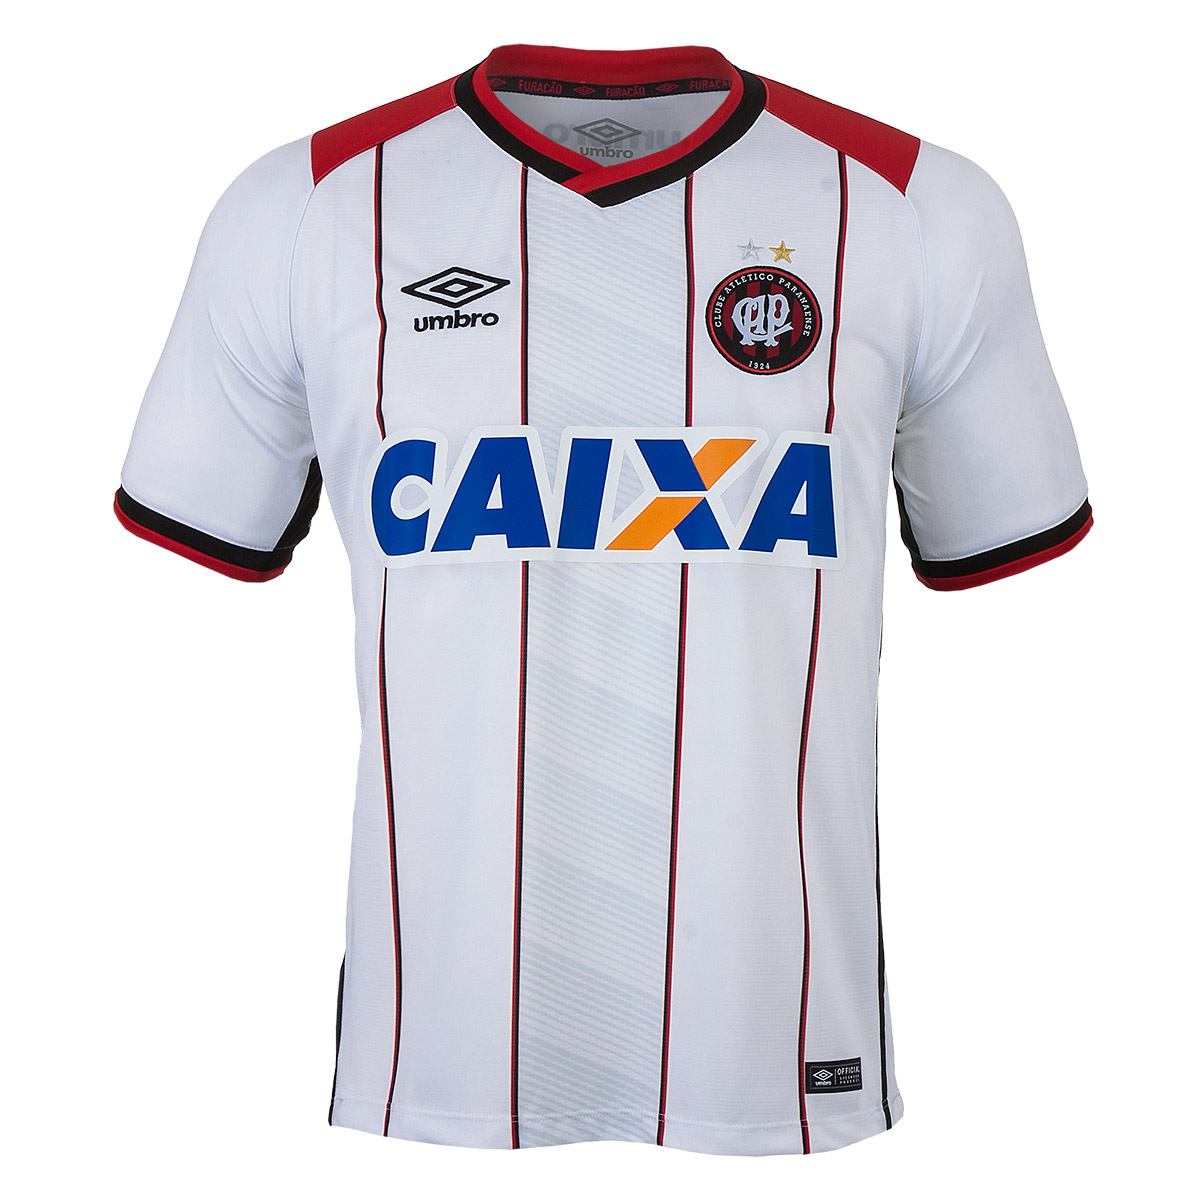 Camisa Masc. Umbro Of. Atlético Paranaense 2 2016 Esporte - Indoor - Branco/Vermelho